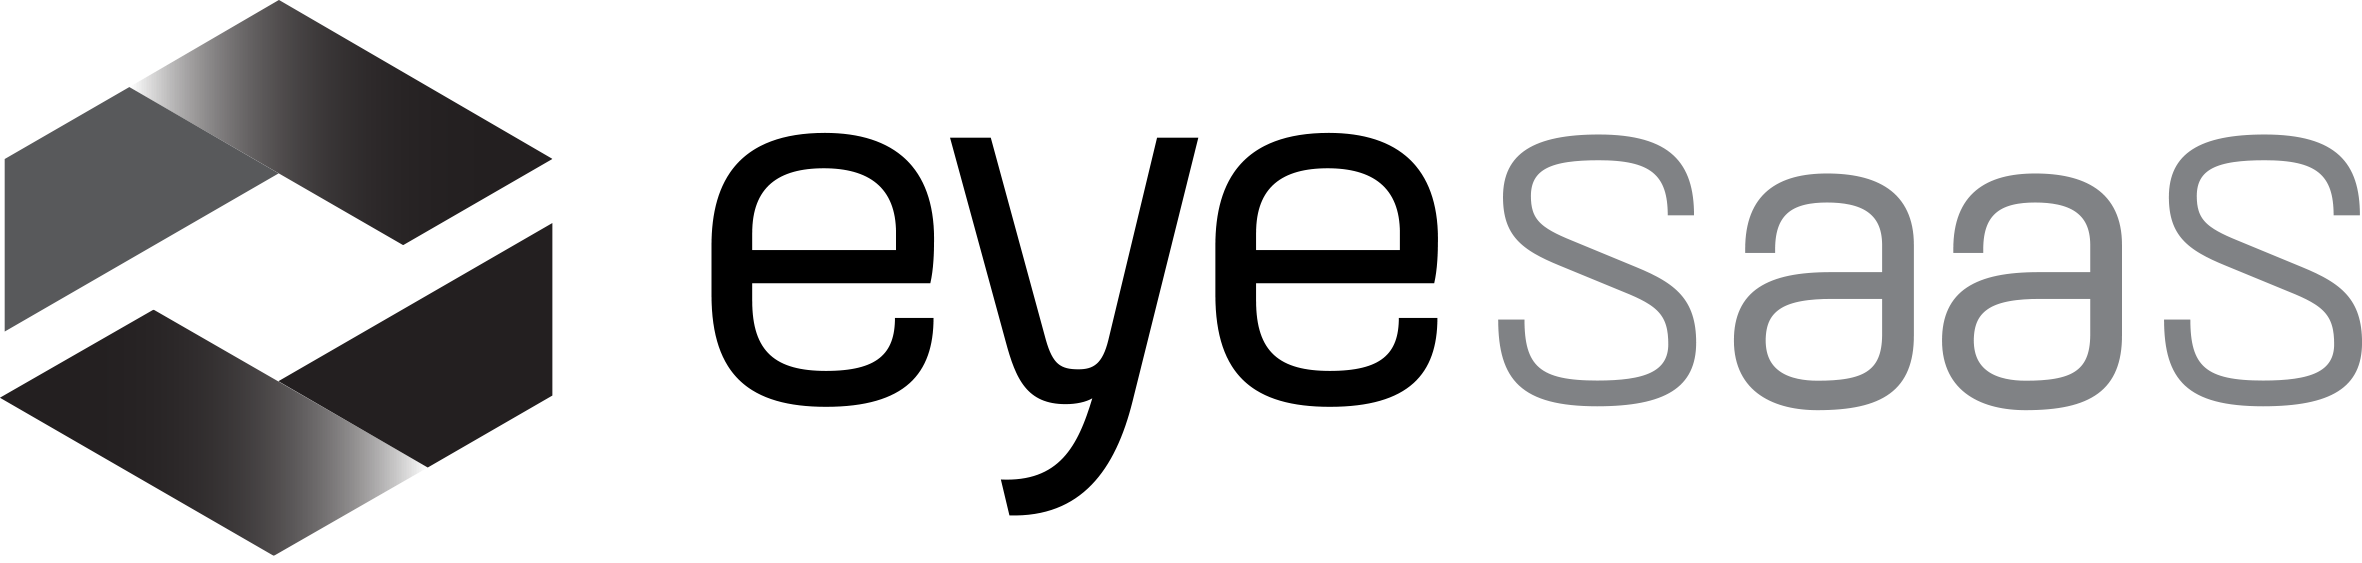 EyeSaaS-logo for lys bakgrunn, lav oppløsning